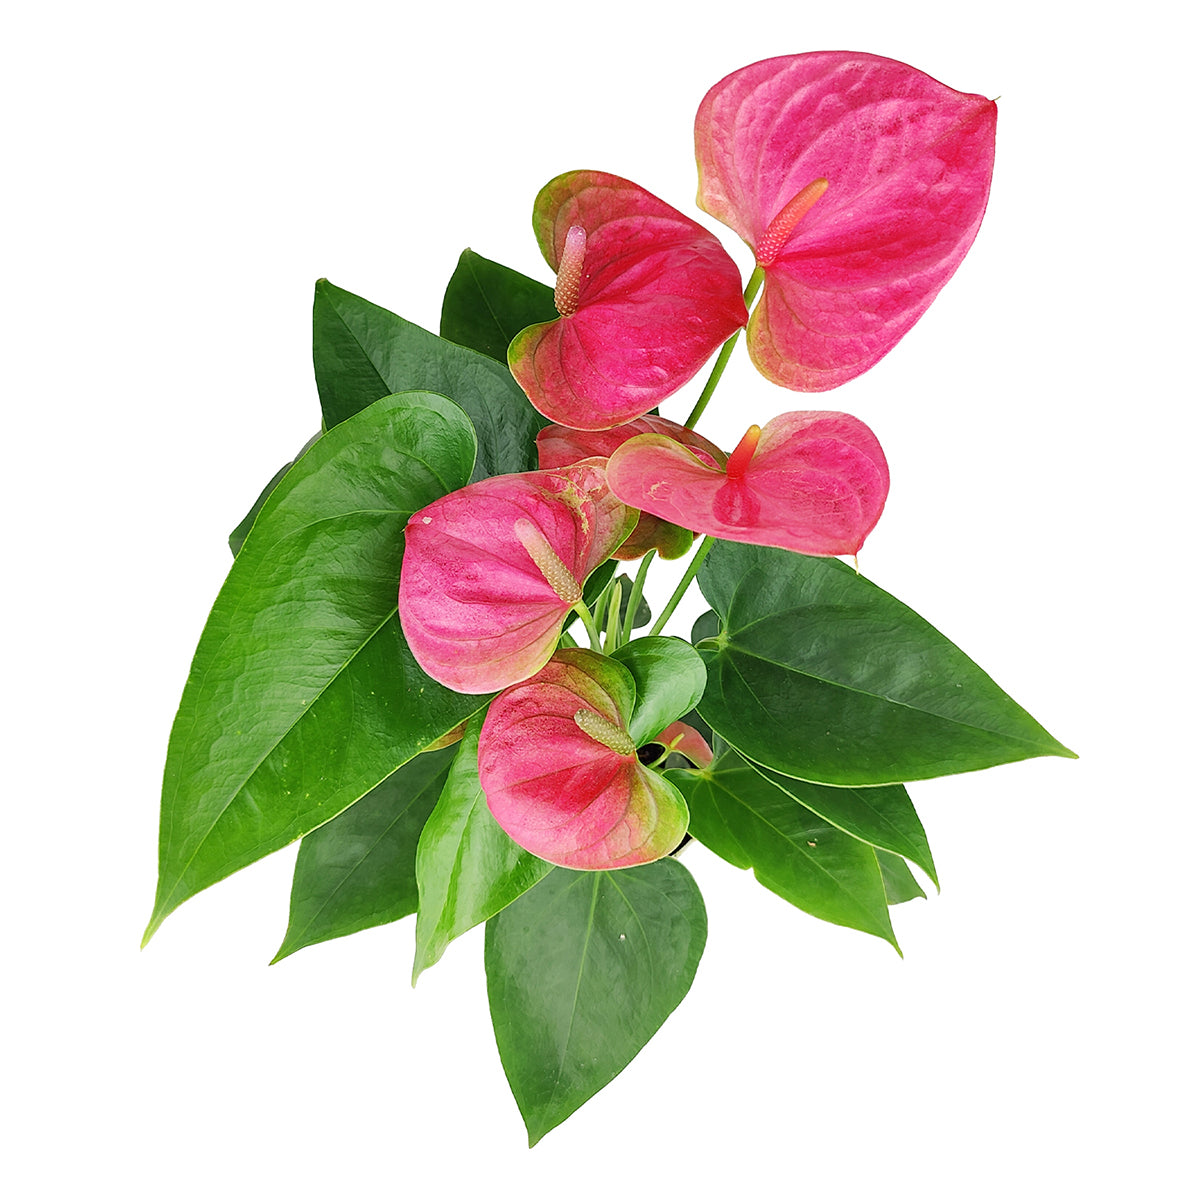 Anthurium Pink, Anthurium Flowers, Flowering Houseplants, Colorful Flowering Houseplants, Indoor Houseplants, Air Purifying Houseplant, Best Plants for Beginners